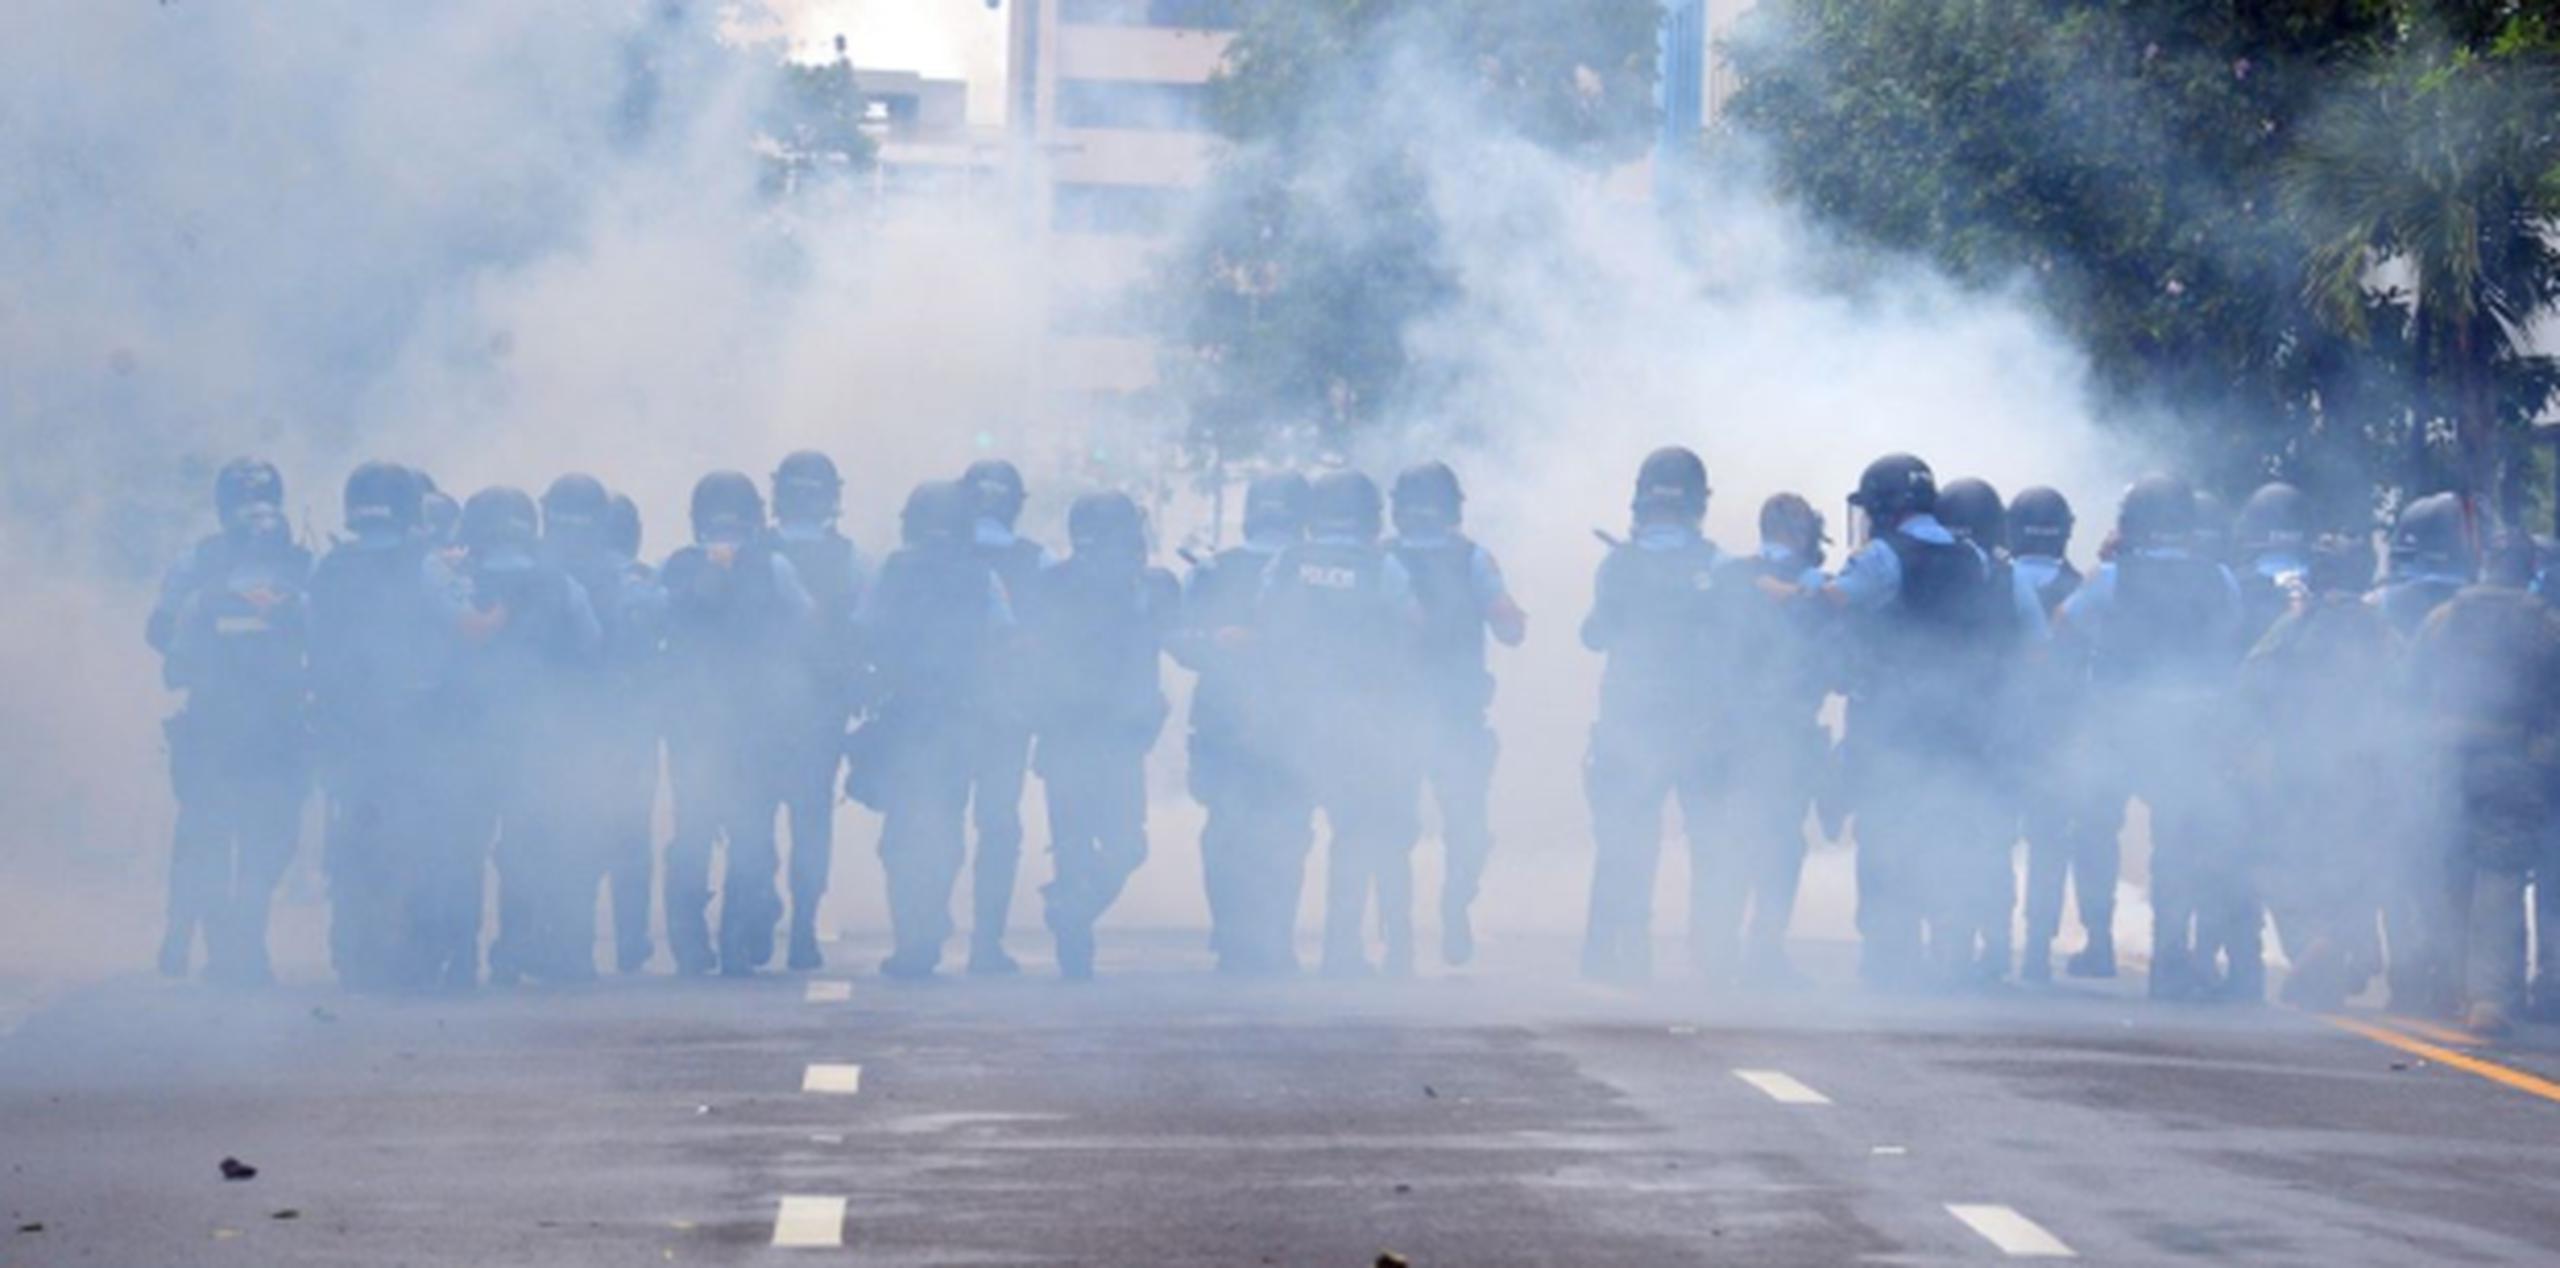 En el lugar se vieron afectados policías, manifestantes y periodistas. (luis.alcaladelolmo@gfrmedia.com)